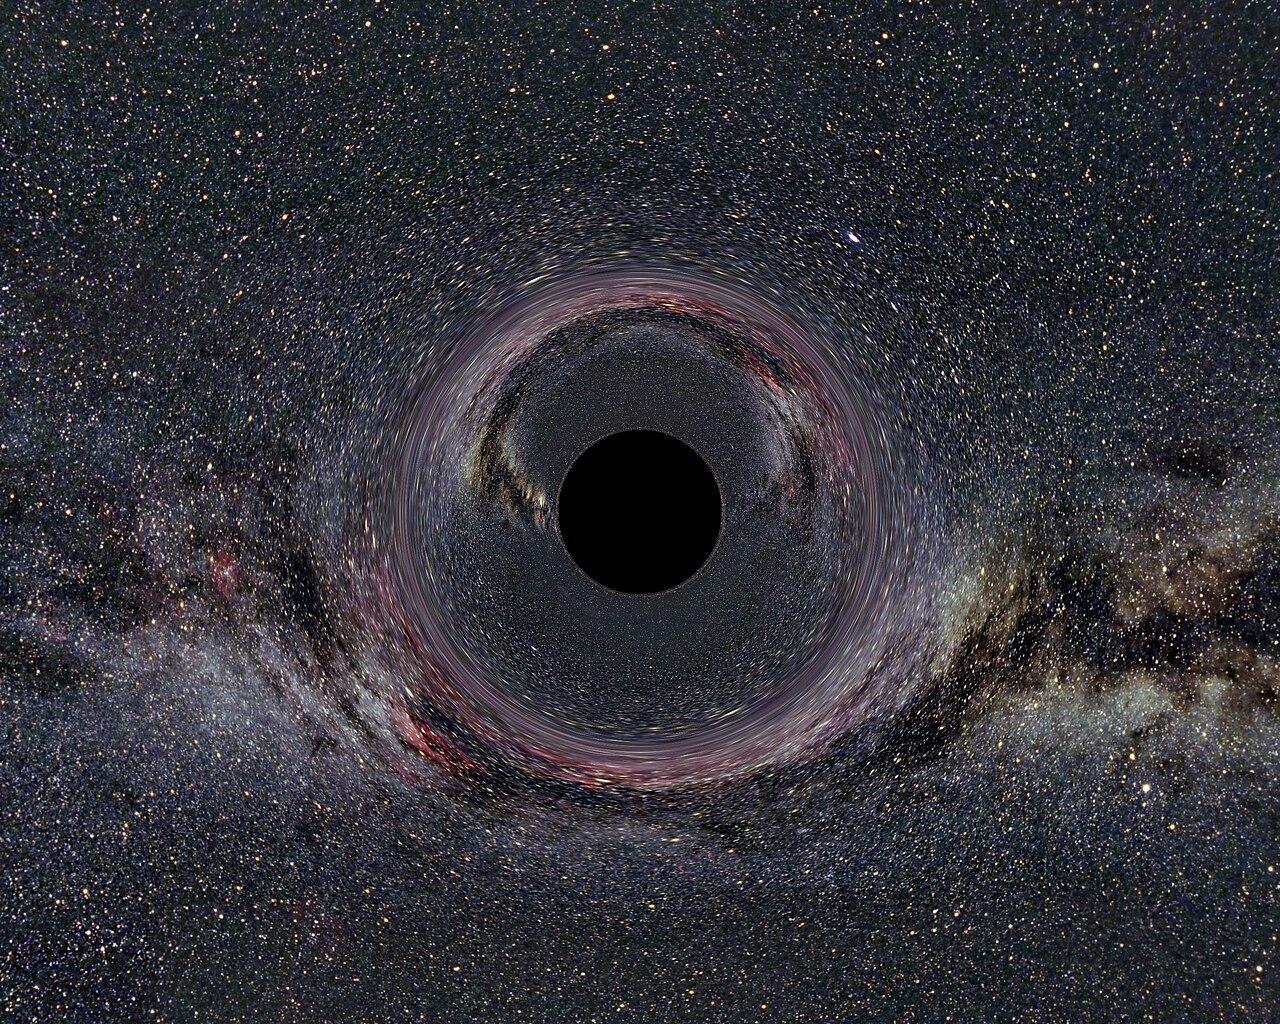 ブラックホールのイメージ図 出典:Wikipedia